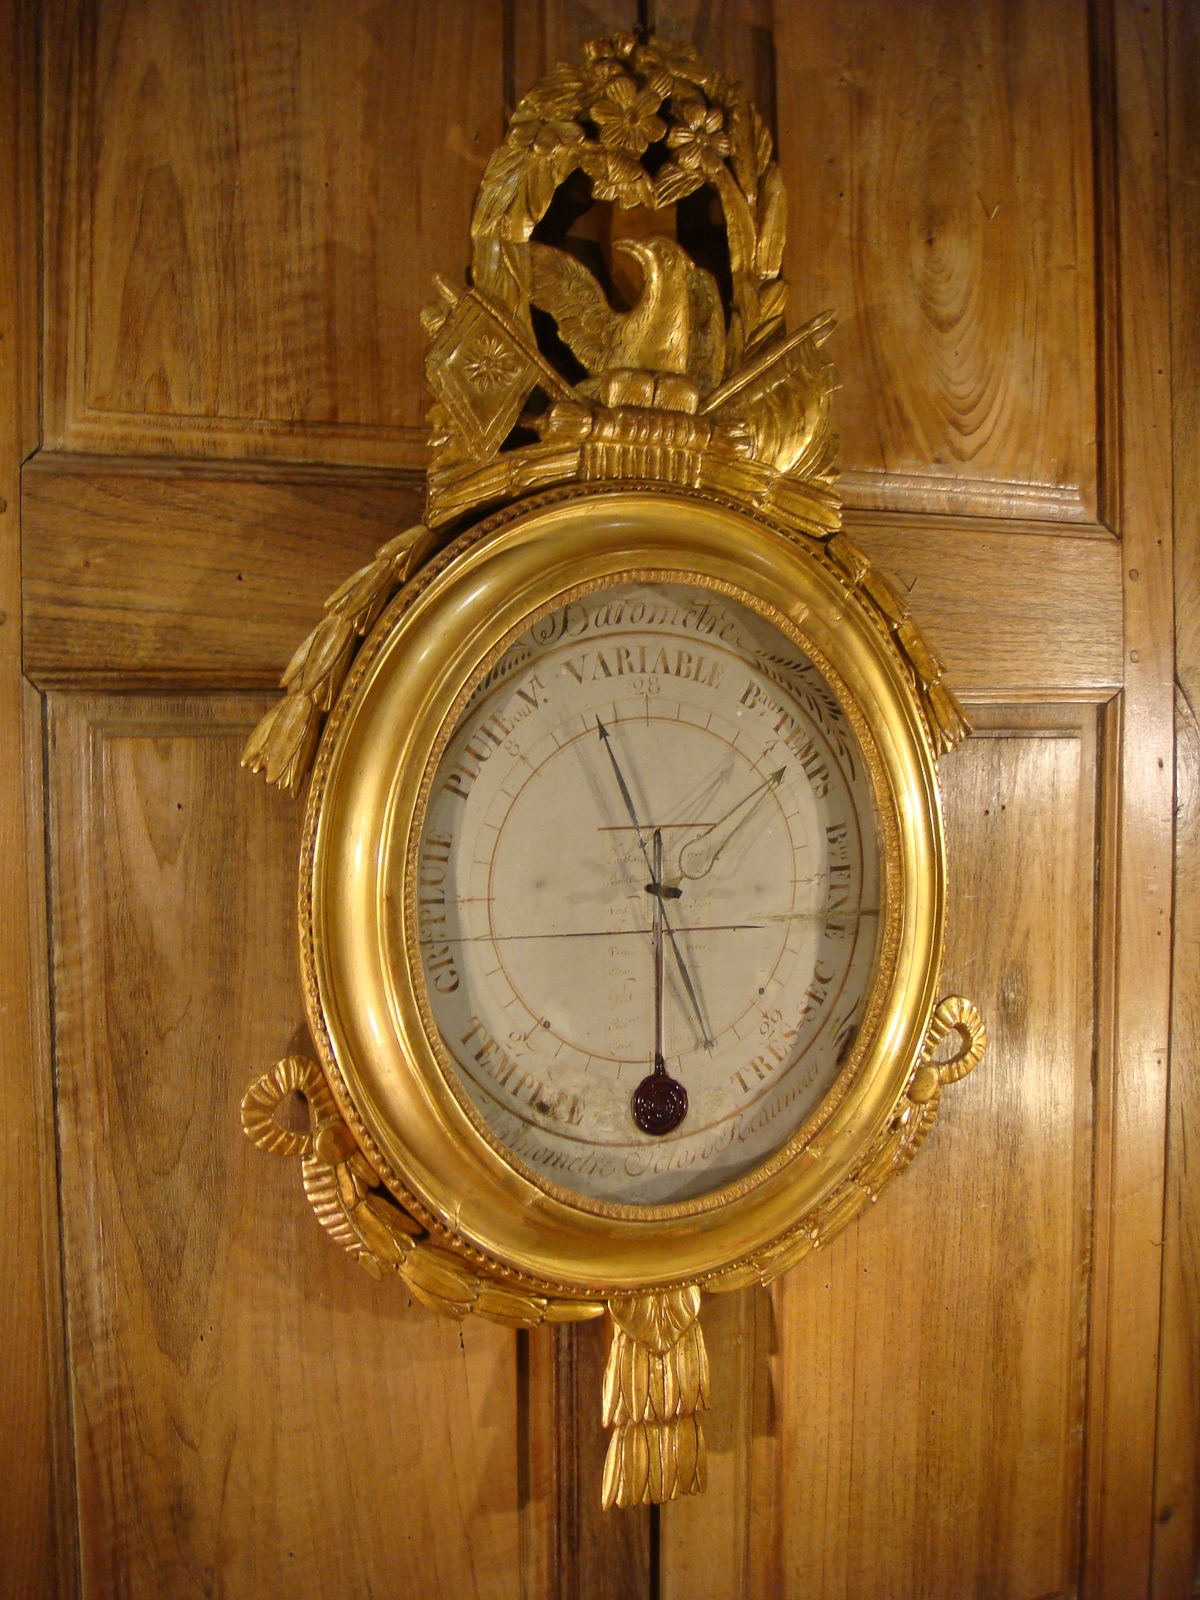 Baromètre Ovale en bois doré Epoque Louis XVI - XVIIIe siècle - N